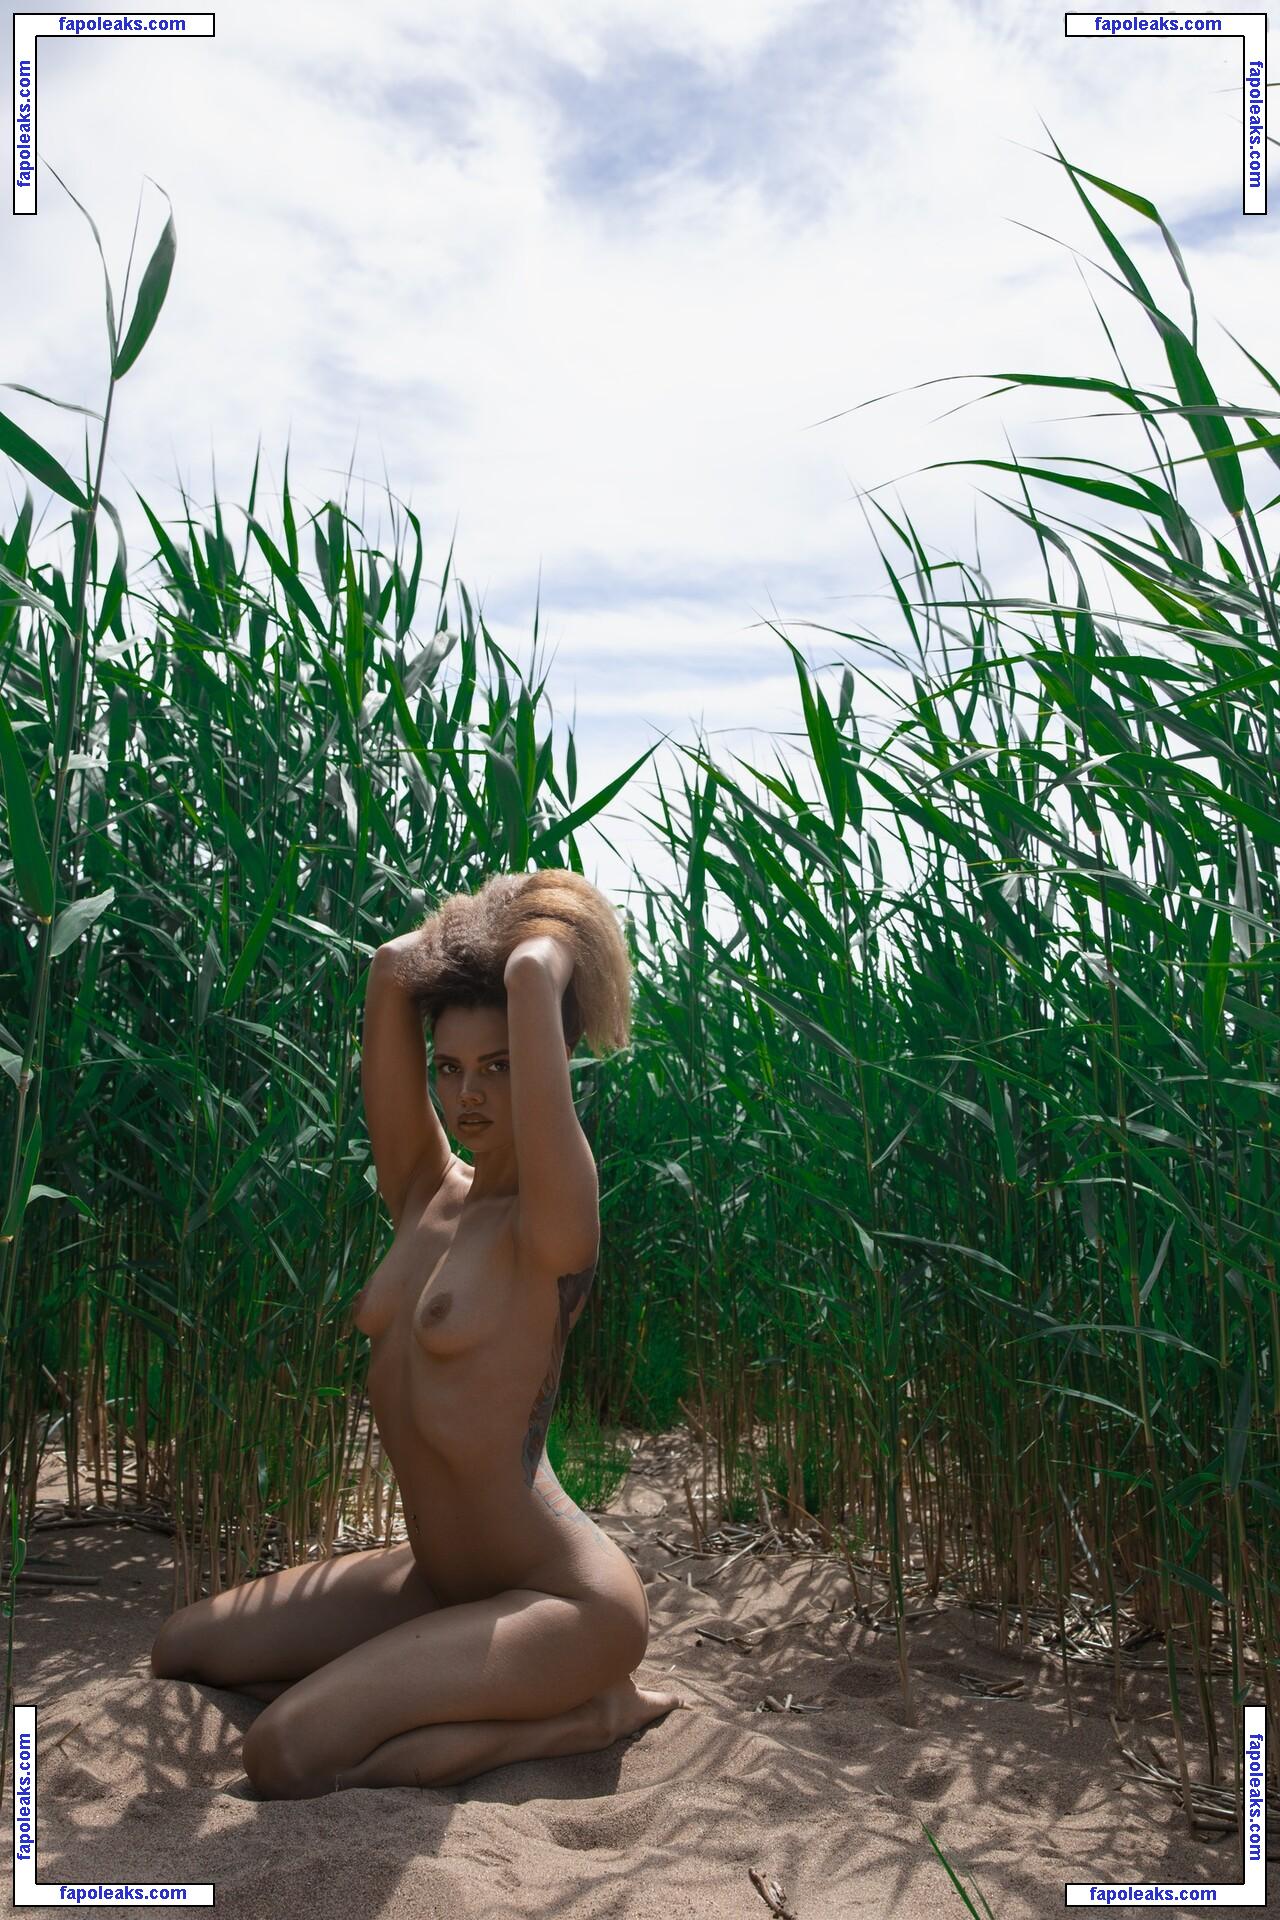 Ksenia Koks / Kseniya K / dark_amerika nude photo #0007 from OnlyFans